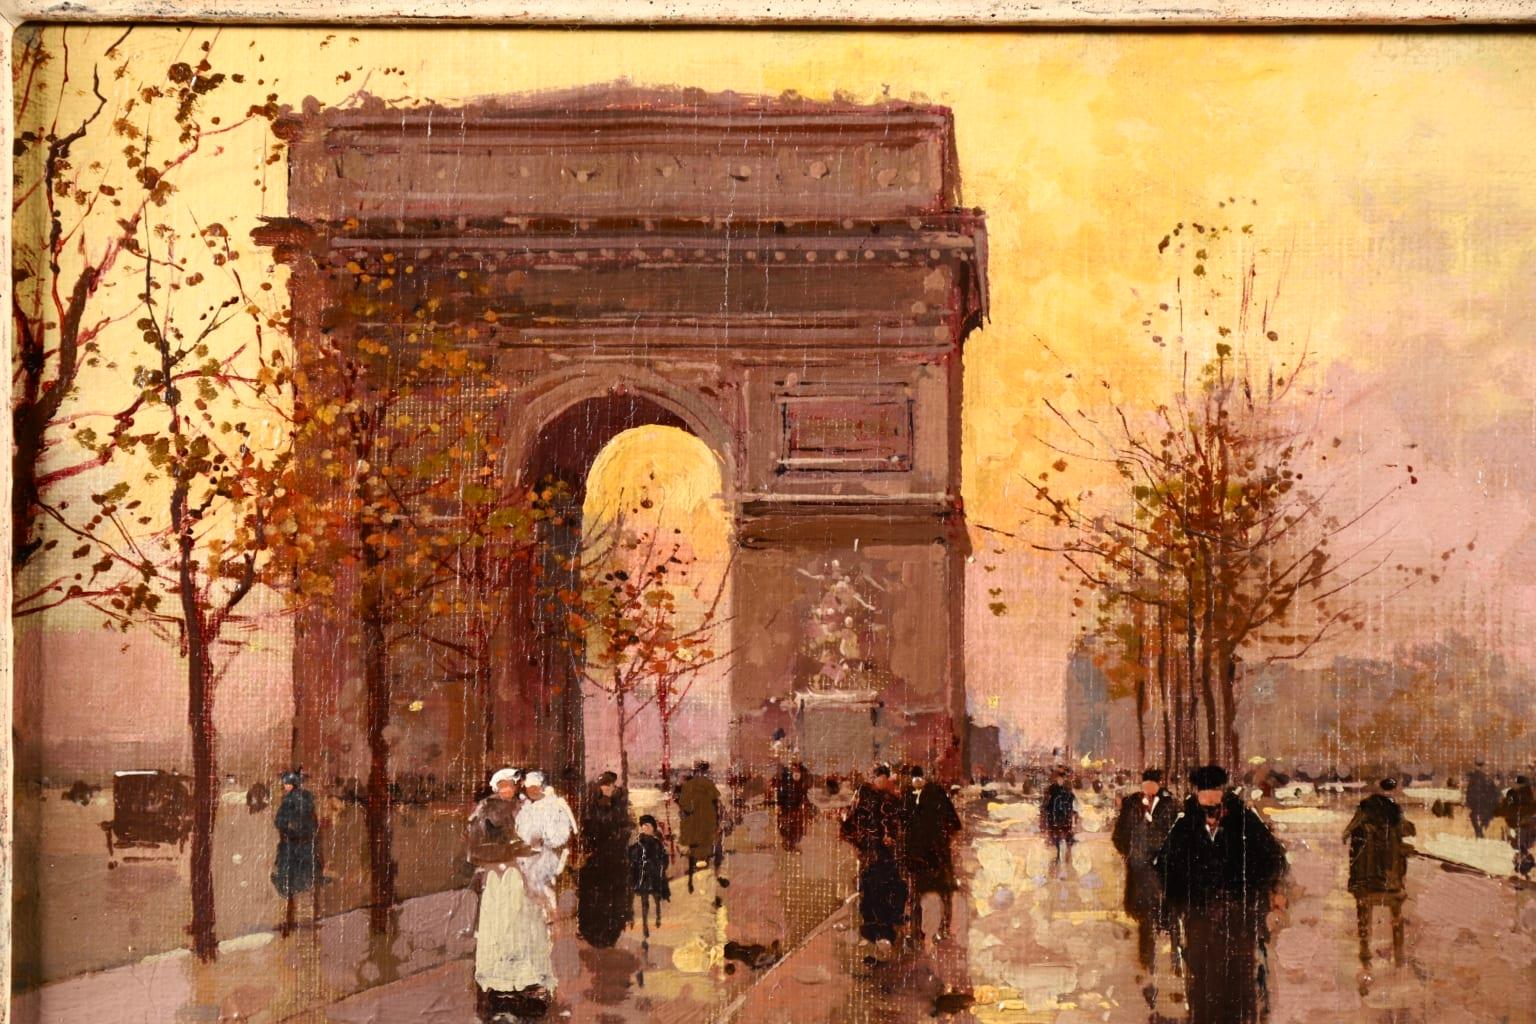 L'Arc de Triomphe - Soir - 20th Century Oil, Figures in Cityscape by E L Cortès - Brown Figurative Painting by Édouard Leon Cortès